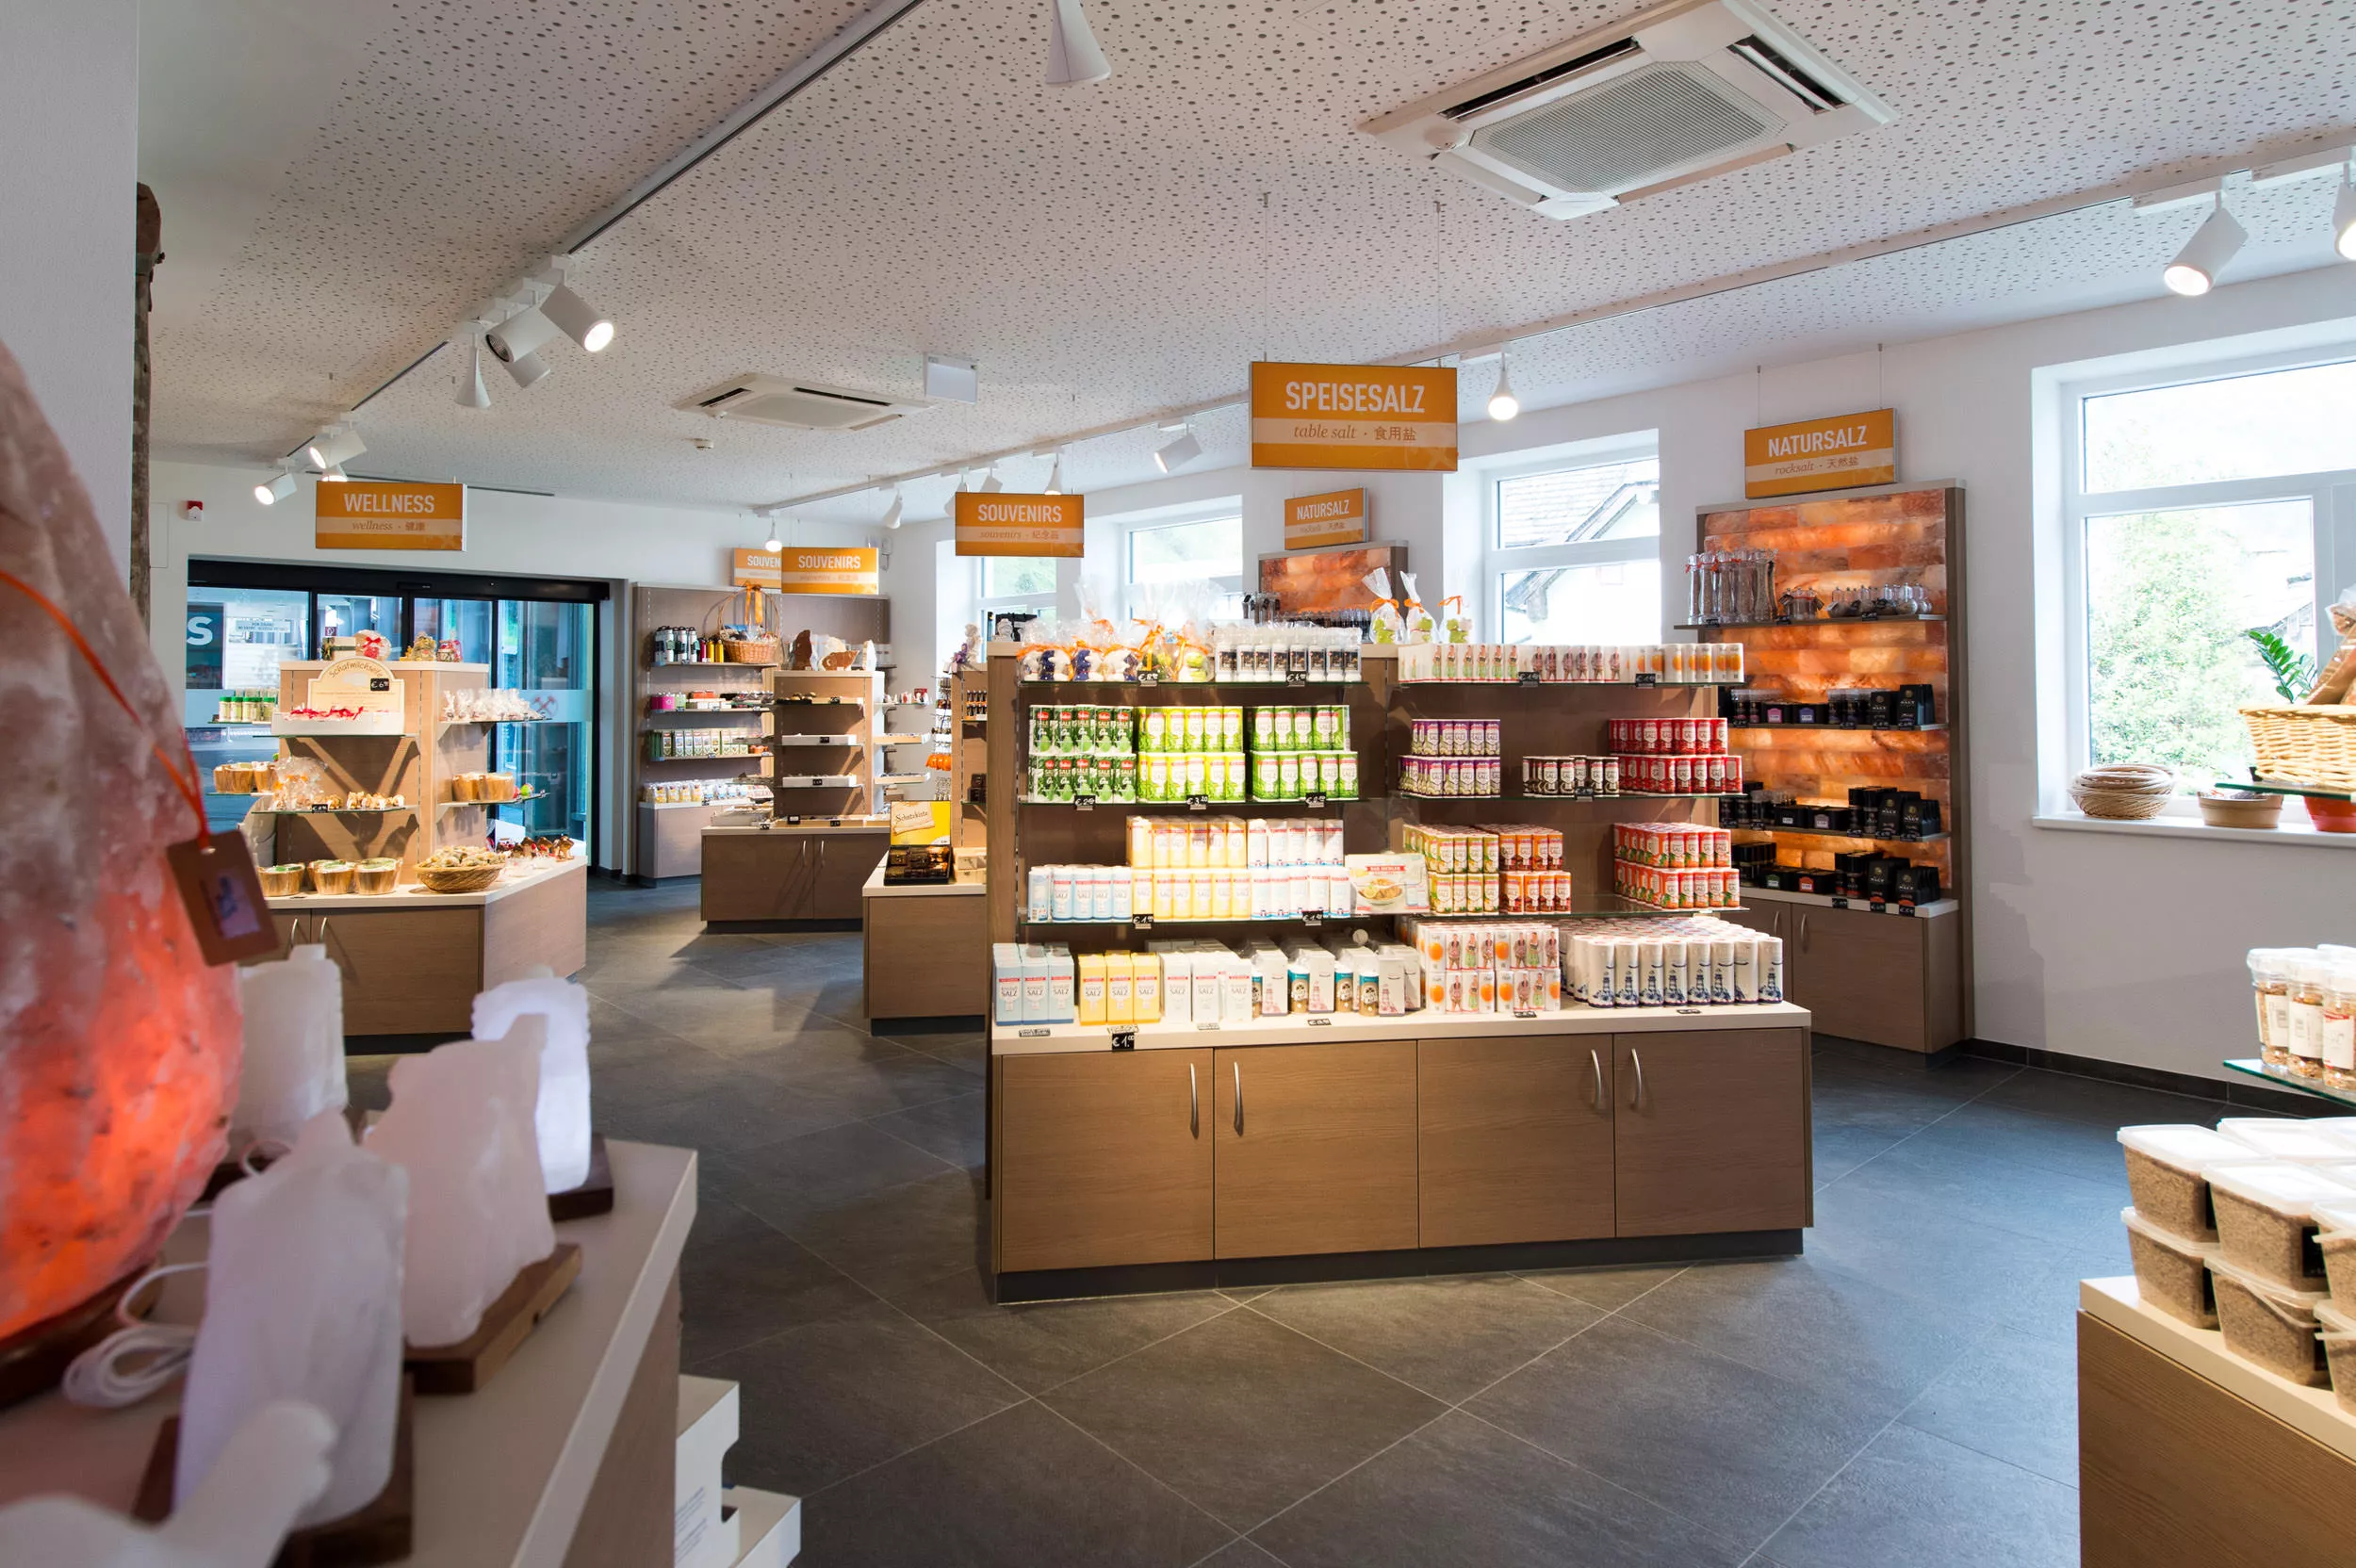 Salzwelten Shop Hallstatt in Austria, Europe | Architecture - Rated 3.6